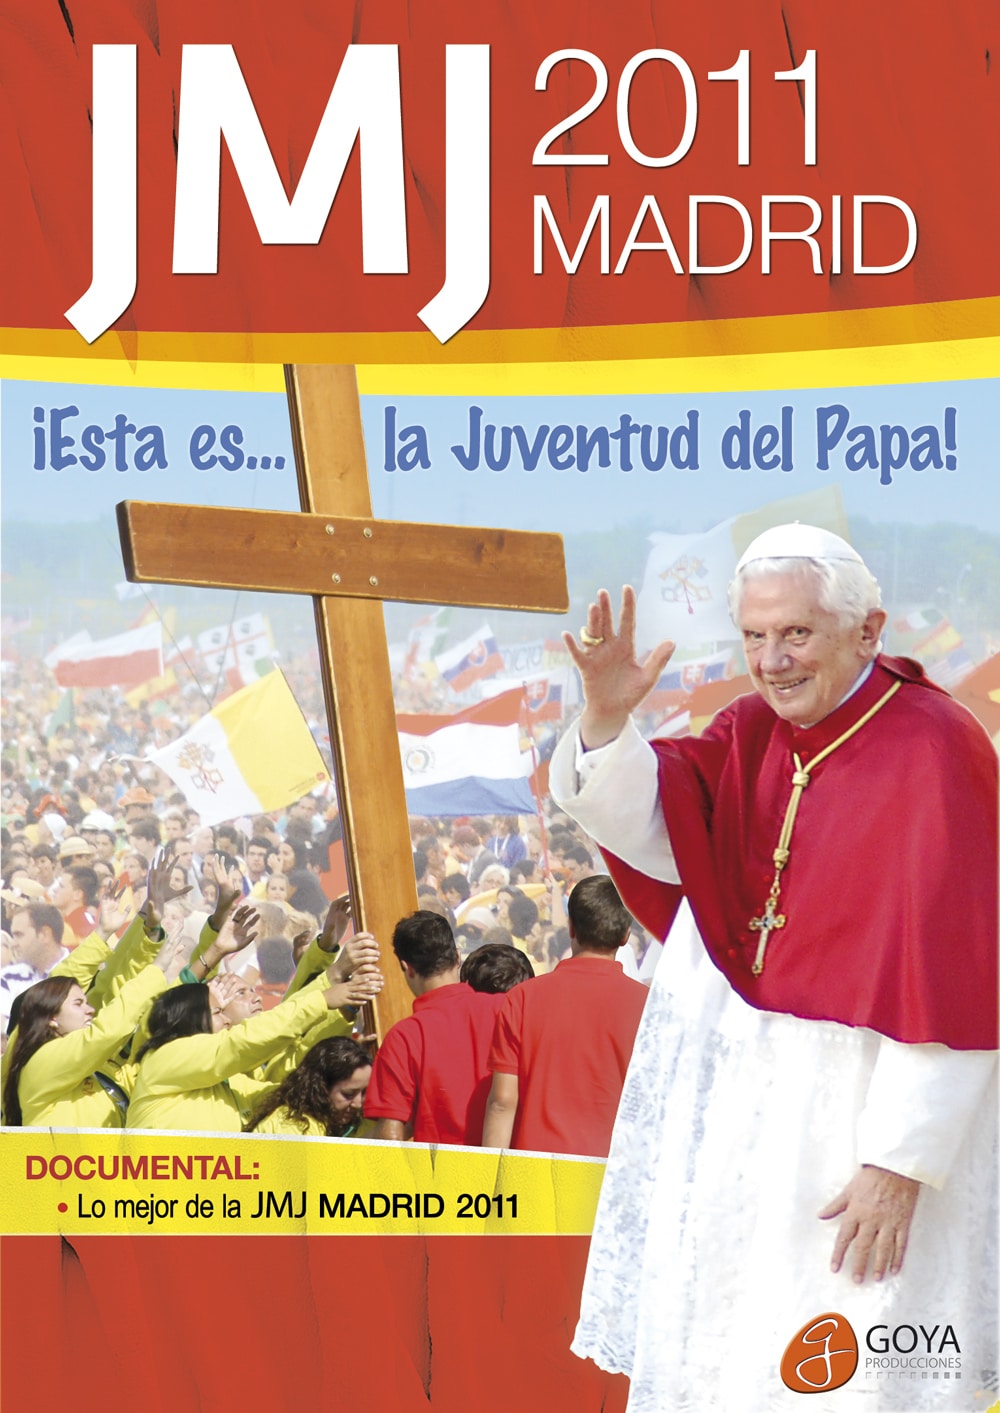 JMJ MADRID 2011: ¡Esta es la juventud del Papa!